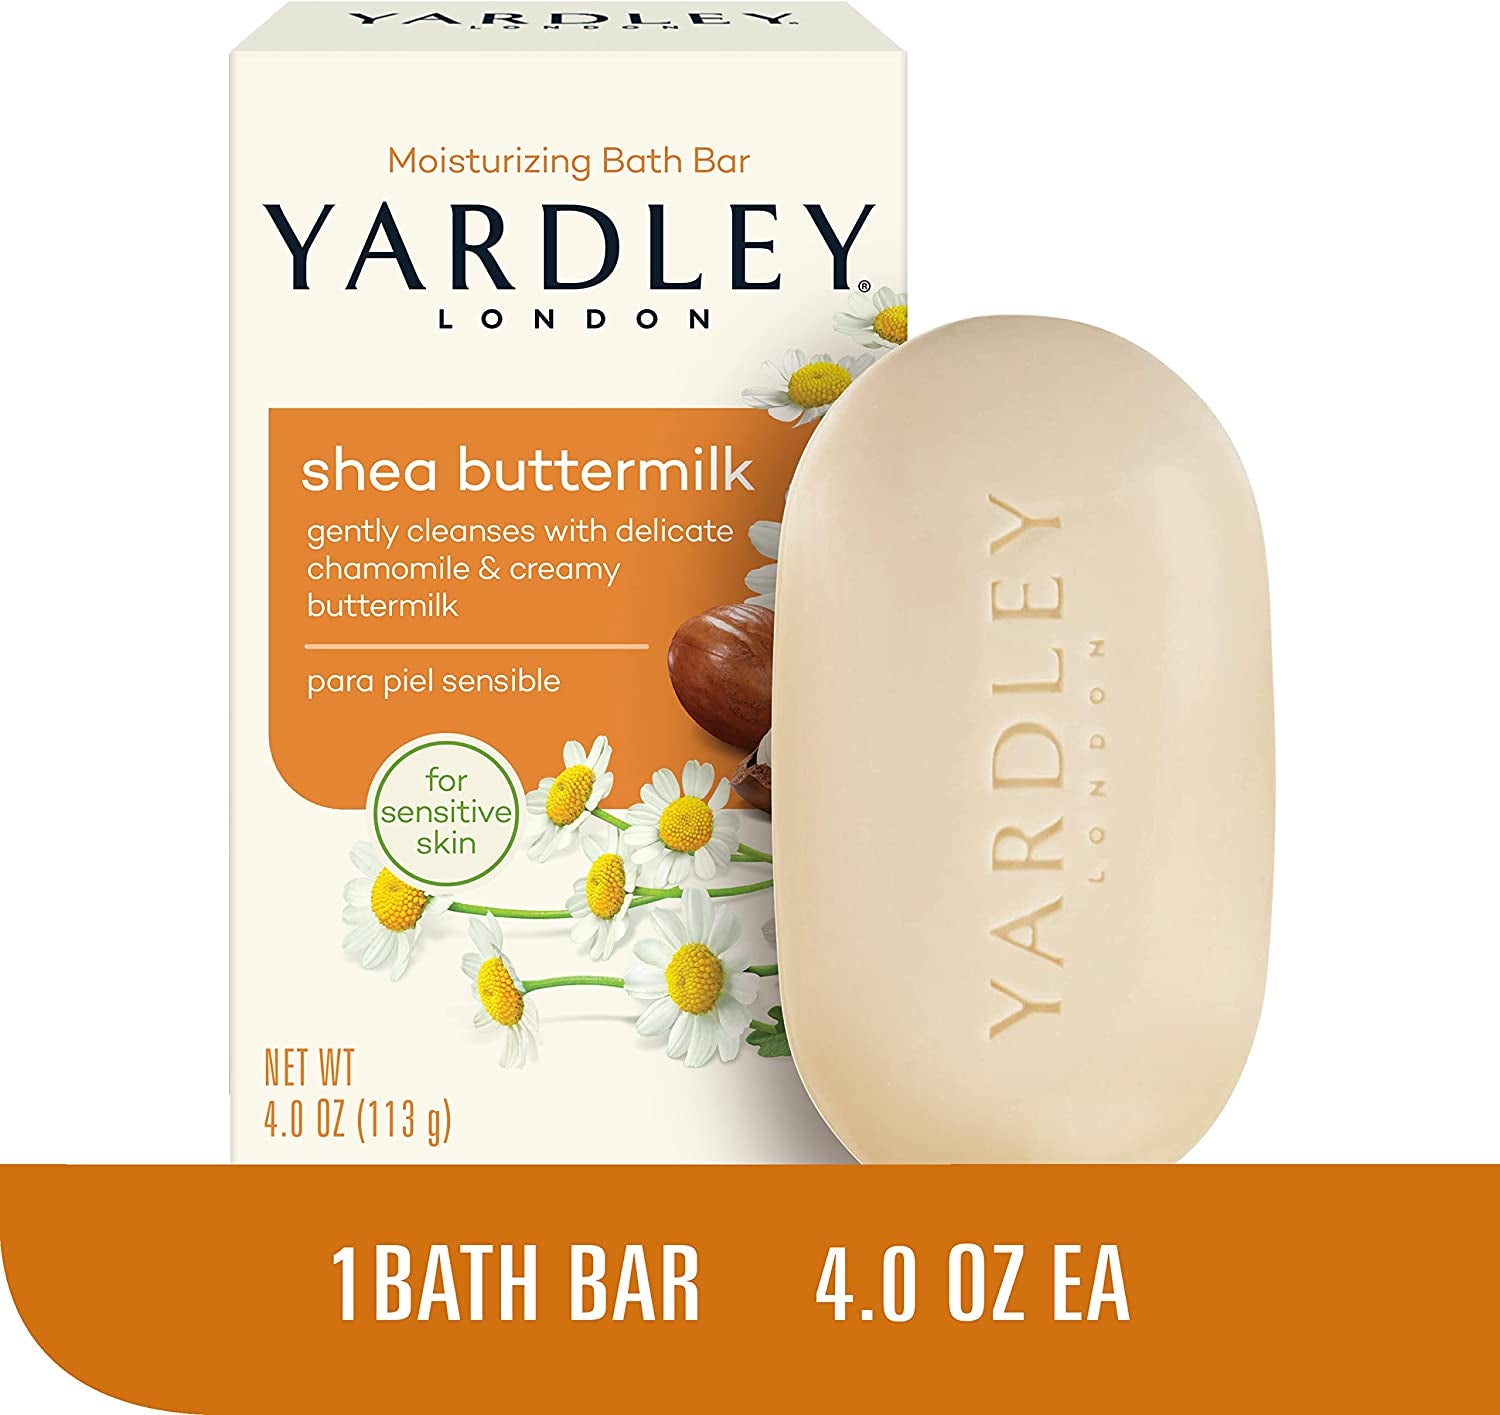 Yardley London Shea Buttermilk Sensitive Skin Naturally Moisturizing Bath Bar, 4 Ounce, 1.5 X 3.75 X 2.5 Inches